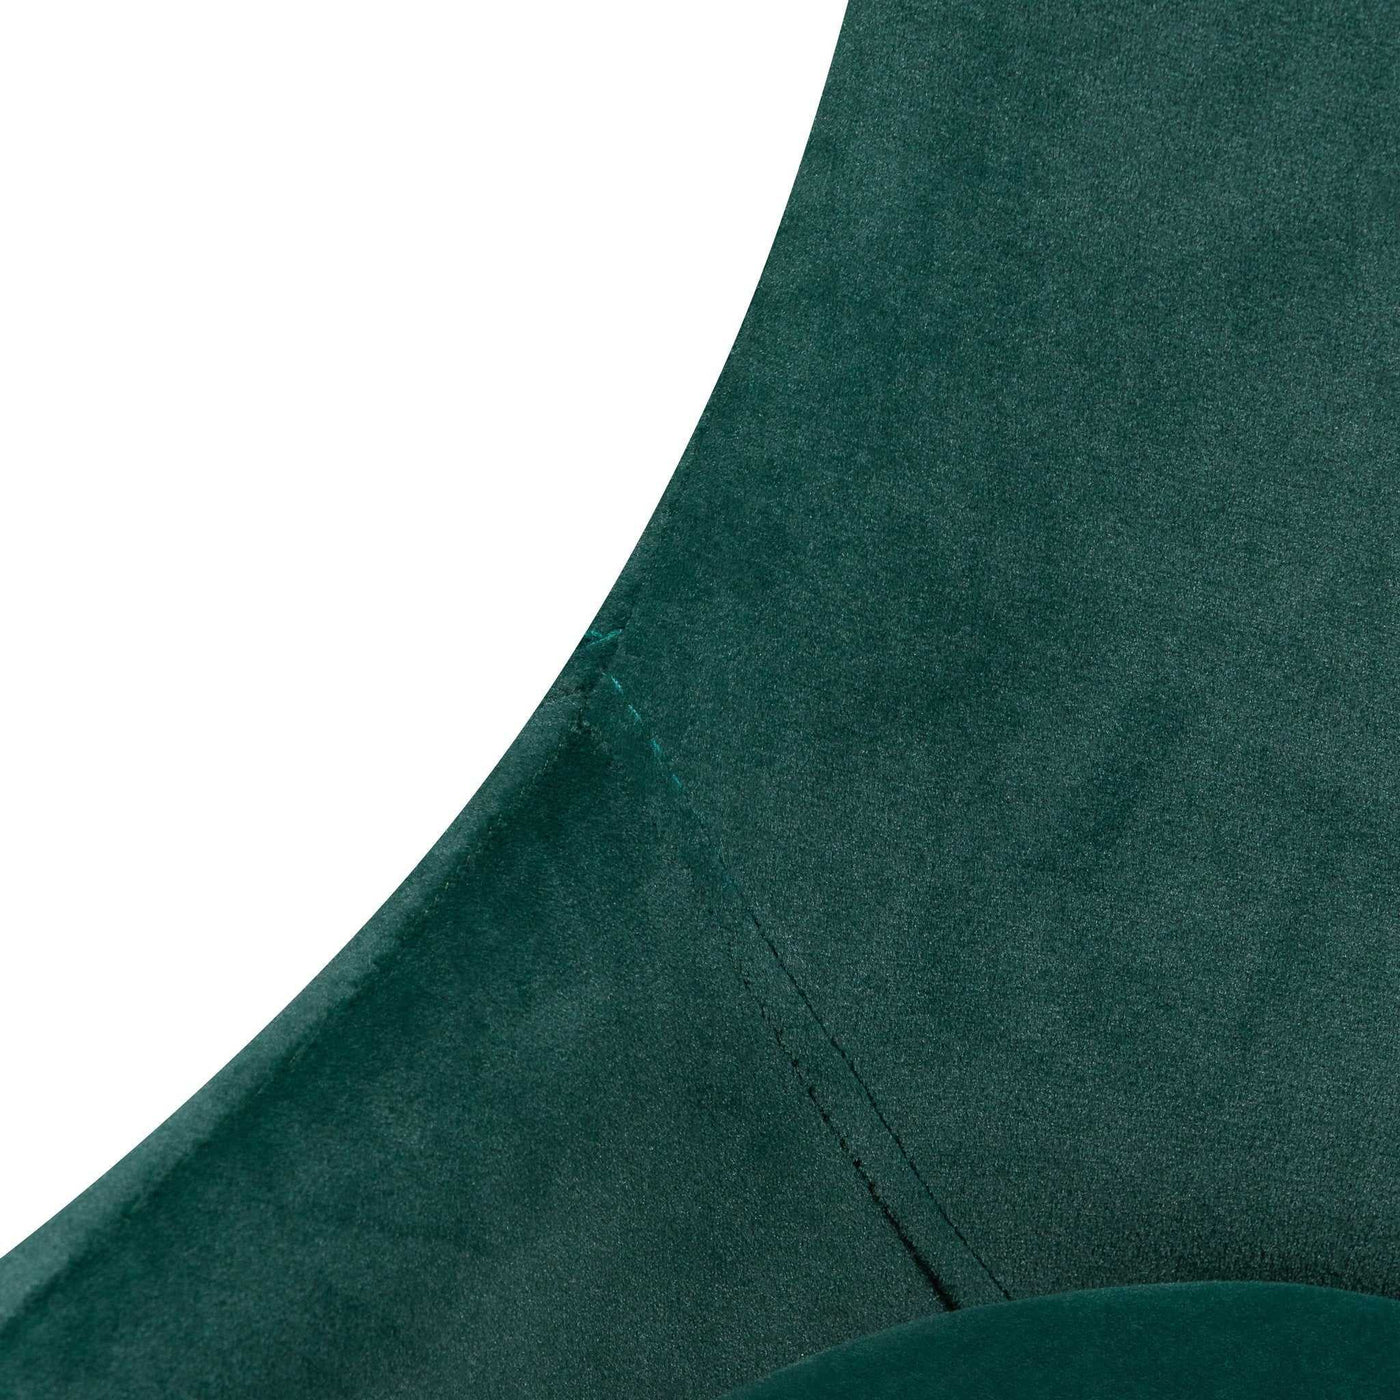 Dining Chair - Dark Green Velvet